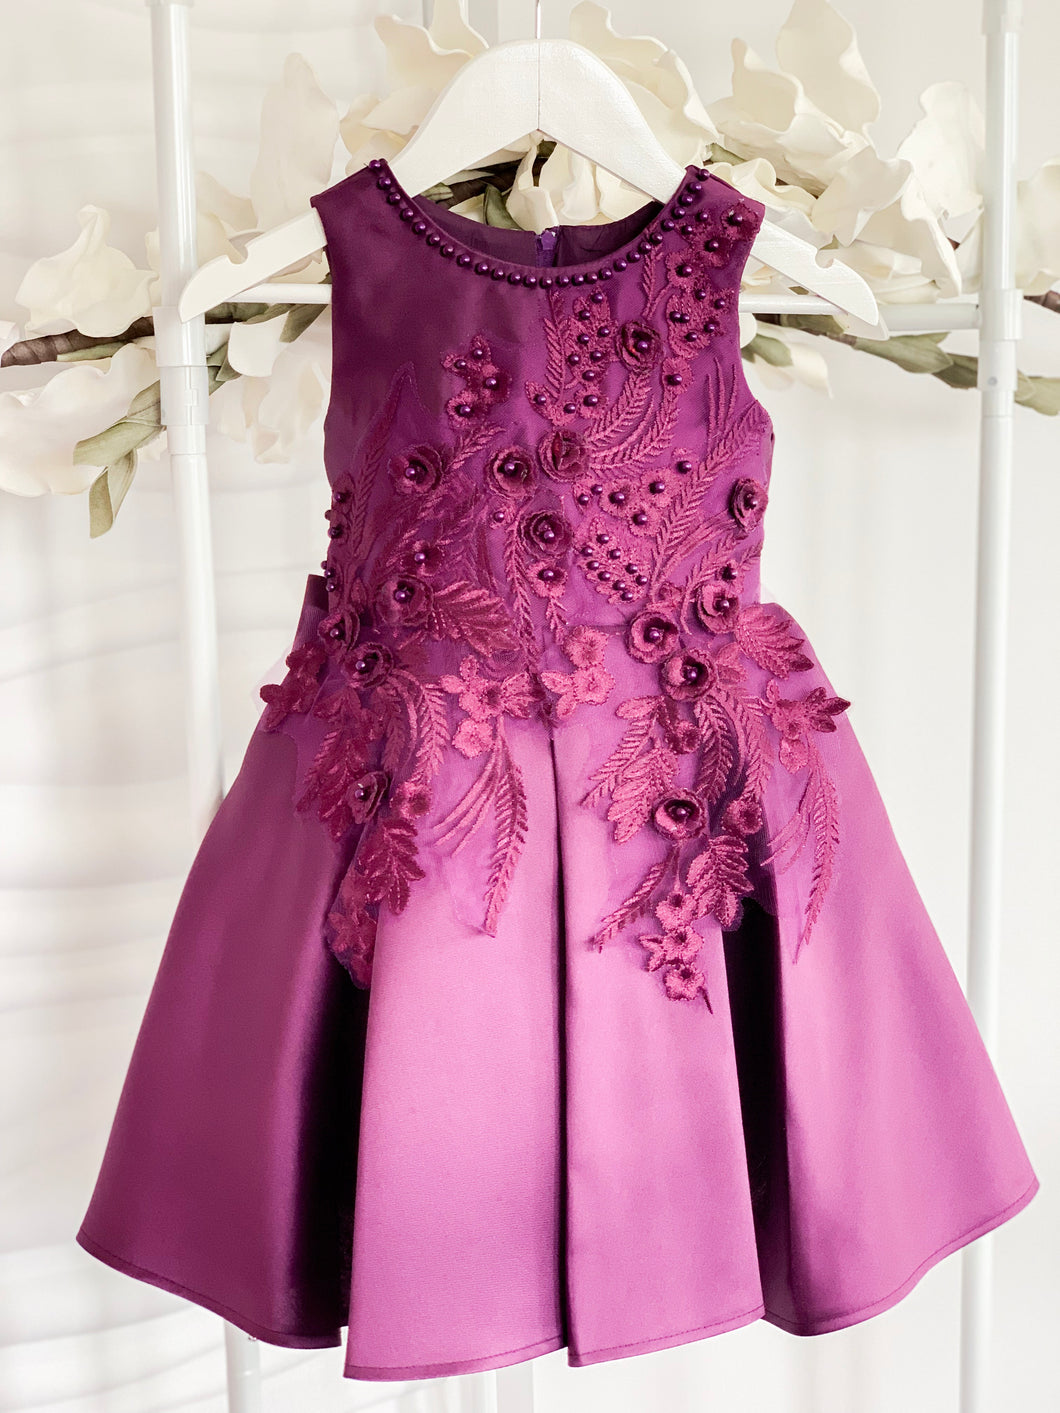 Ayla Dress - Purple - RMD004